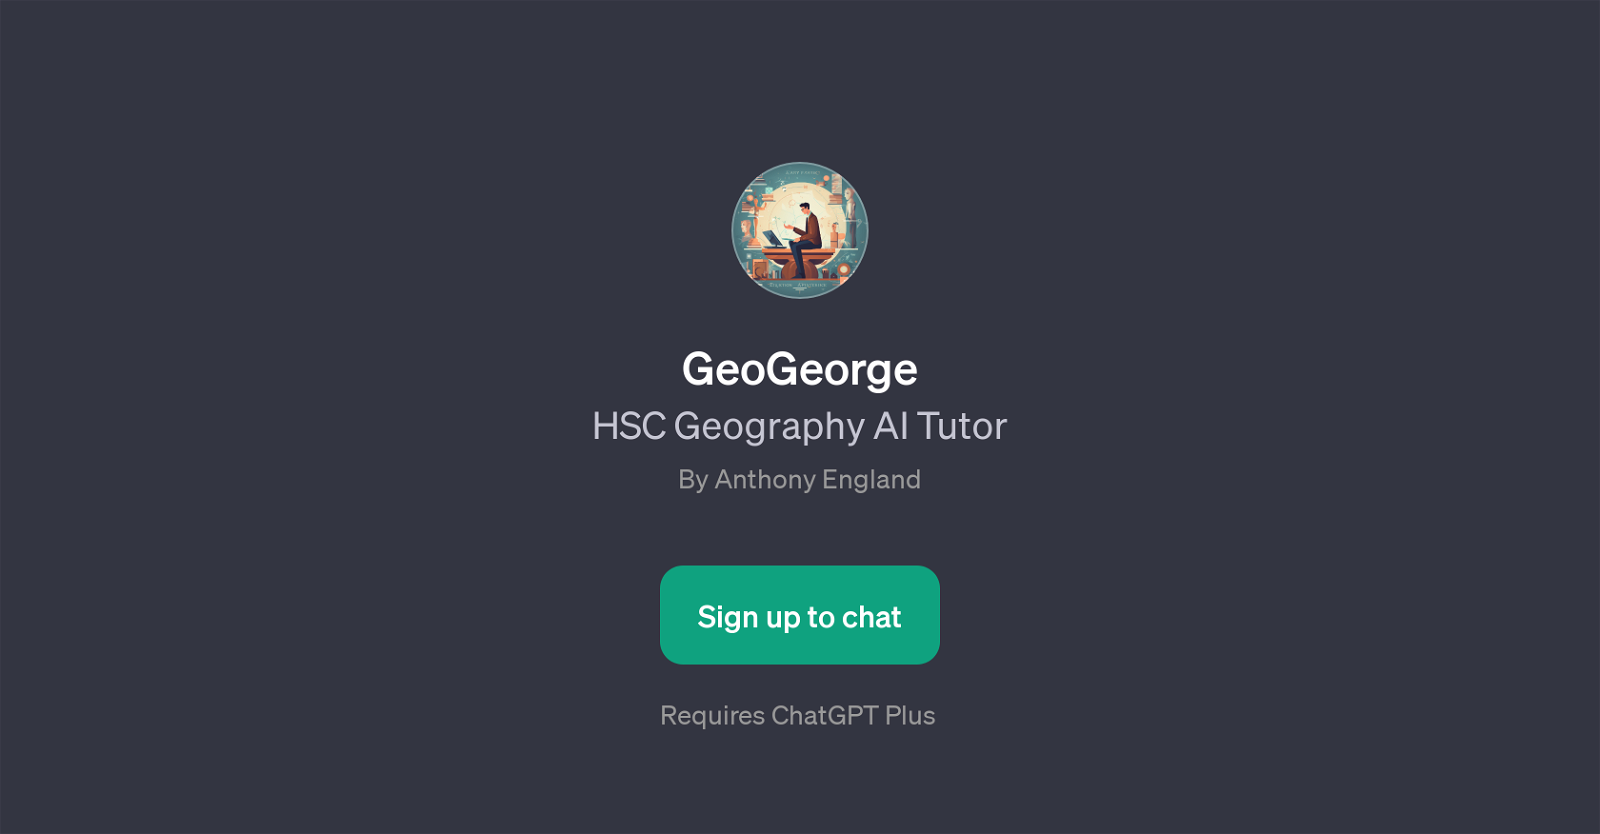 GeoGeorge website